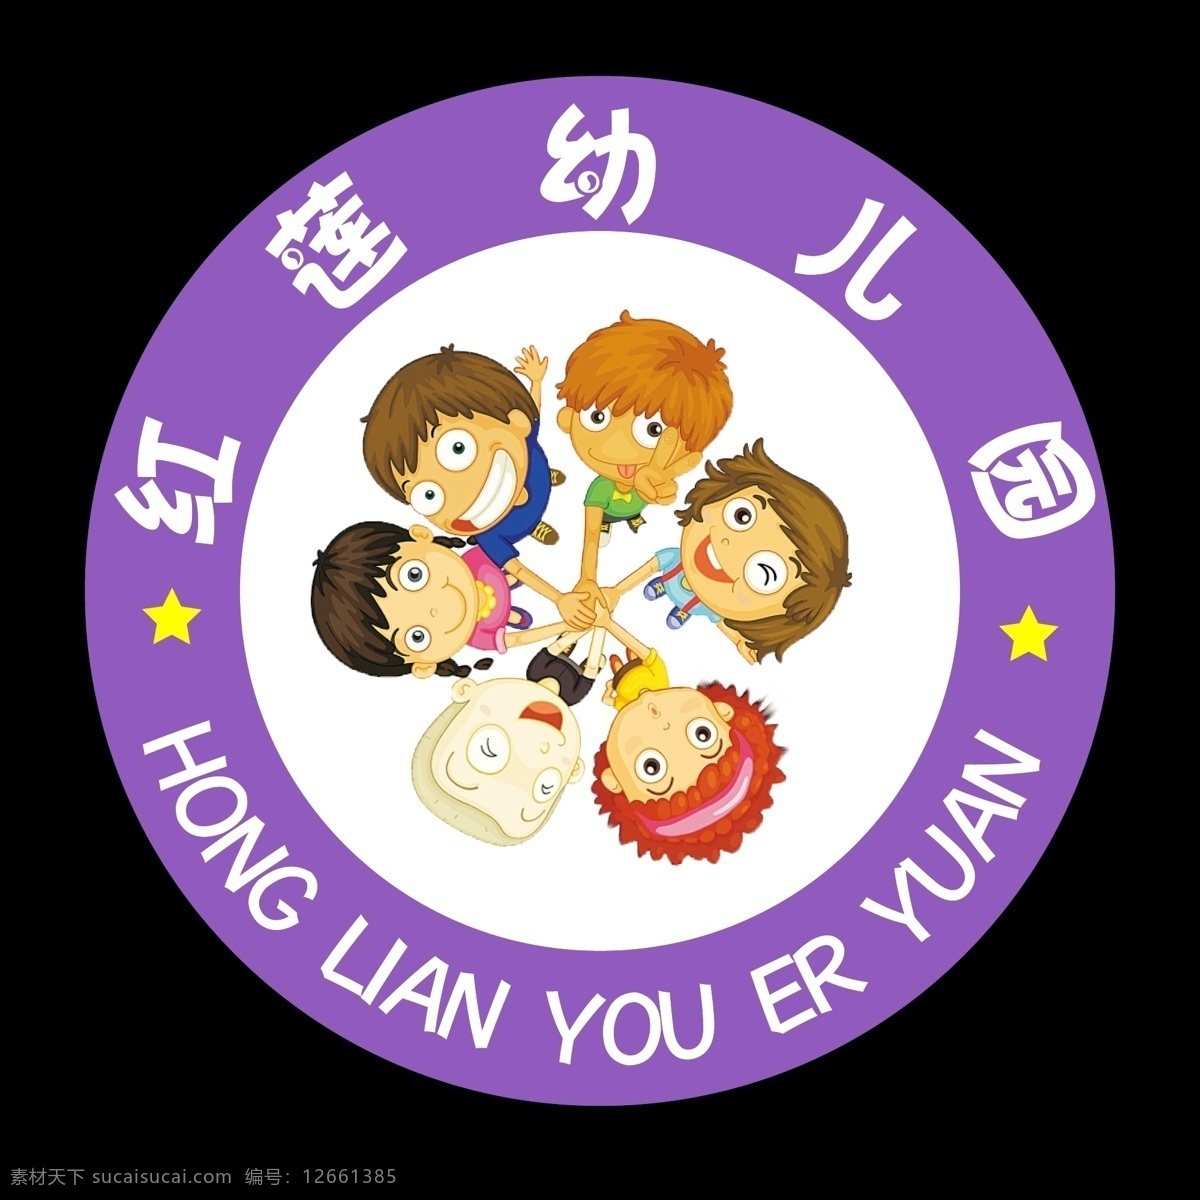 幼儿园 logo 小孩 卡通小孩 牵手 星星 五星 标志图标 其他图标